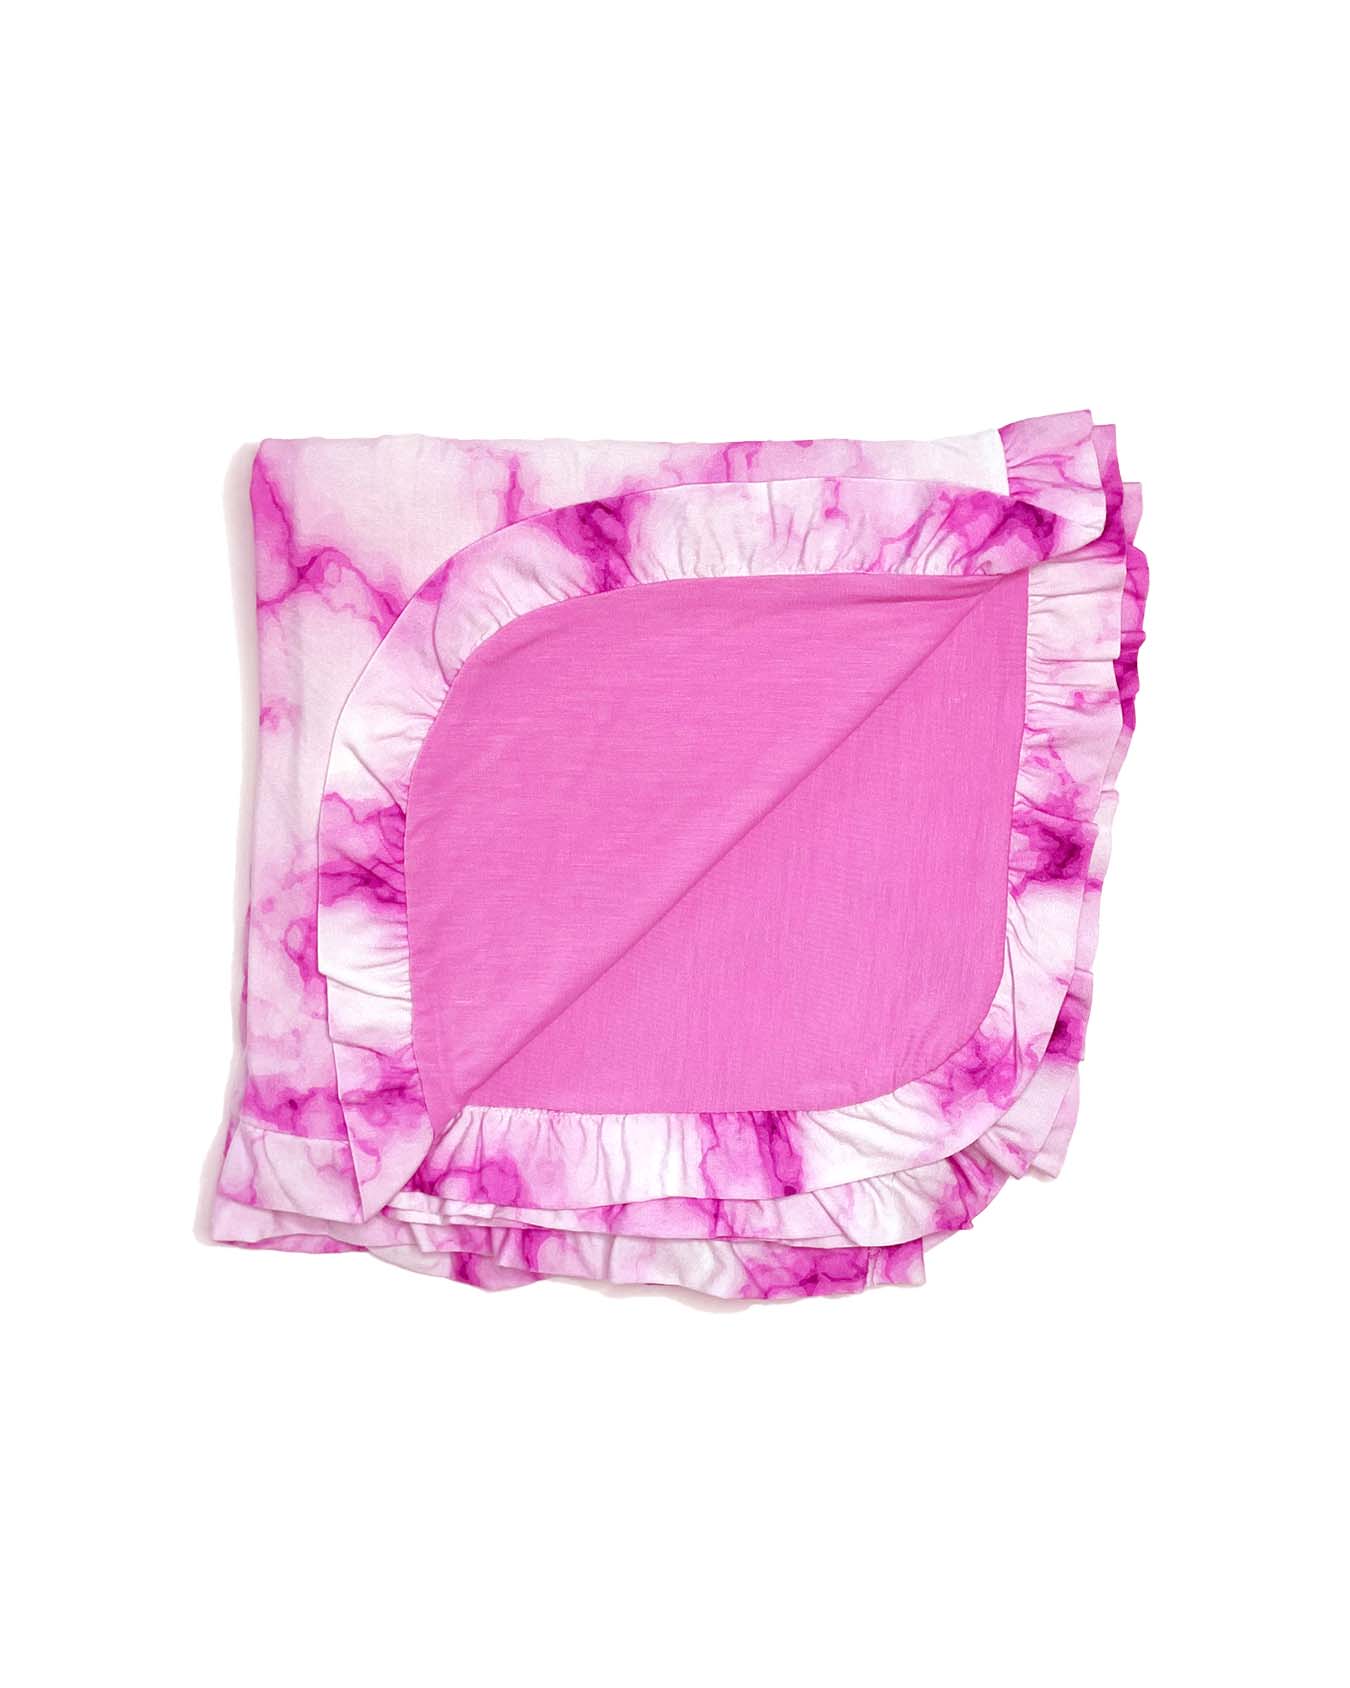 Pink Marble Ruffled Blanket